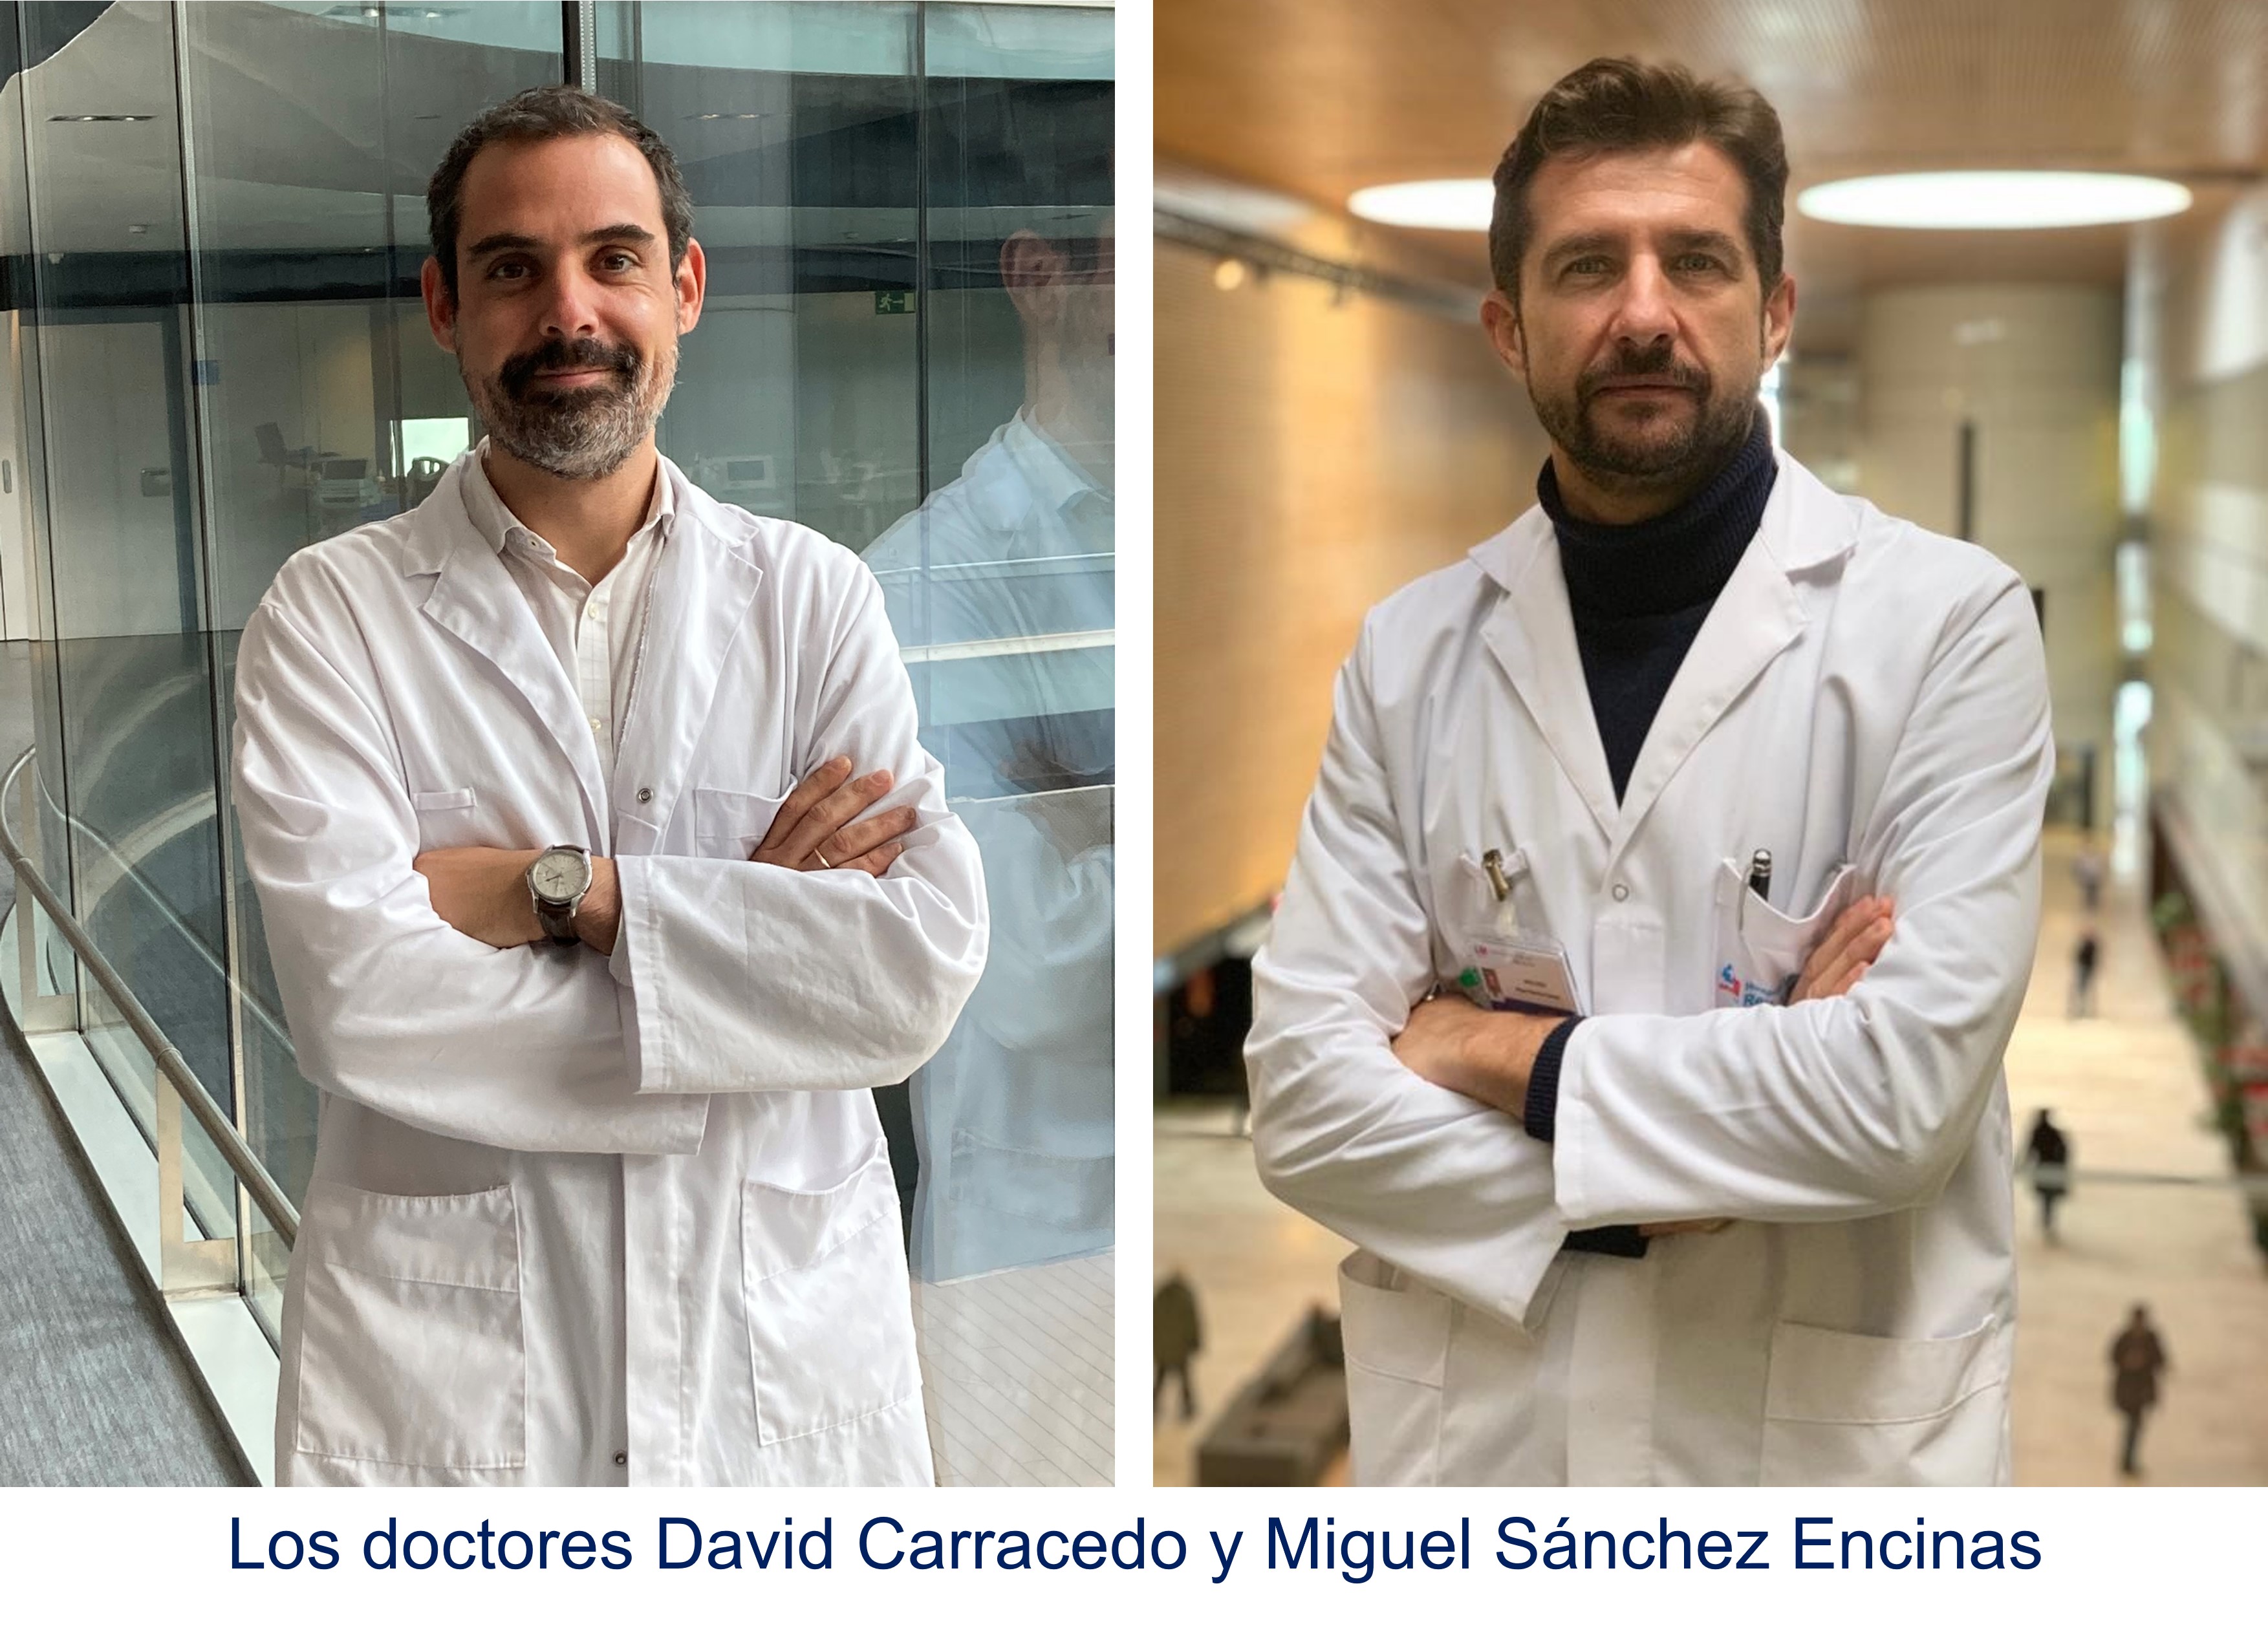 2022 11 29Los doctores David Carracedo y Miguel Sánchez Encinas